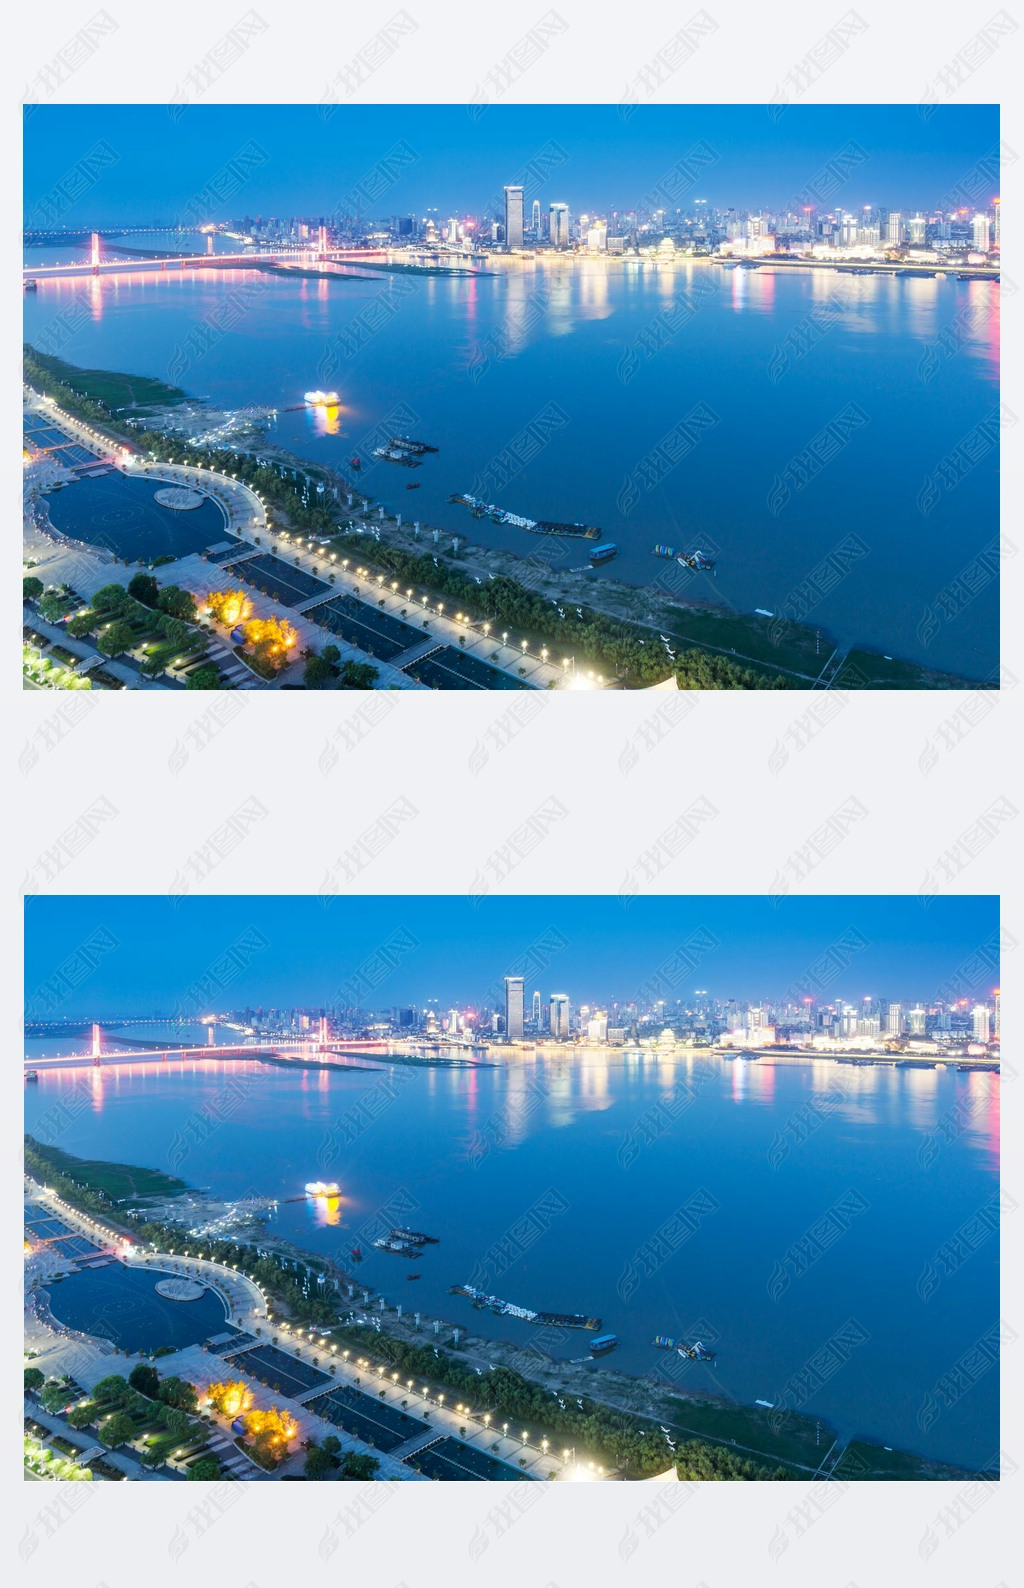 Beautiful cityscape at Nanchang China